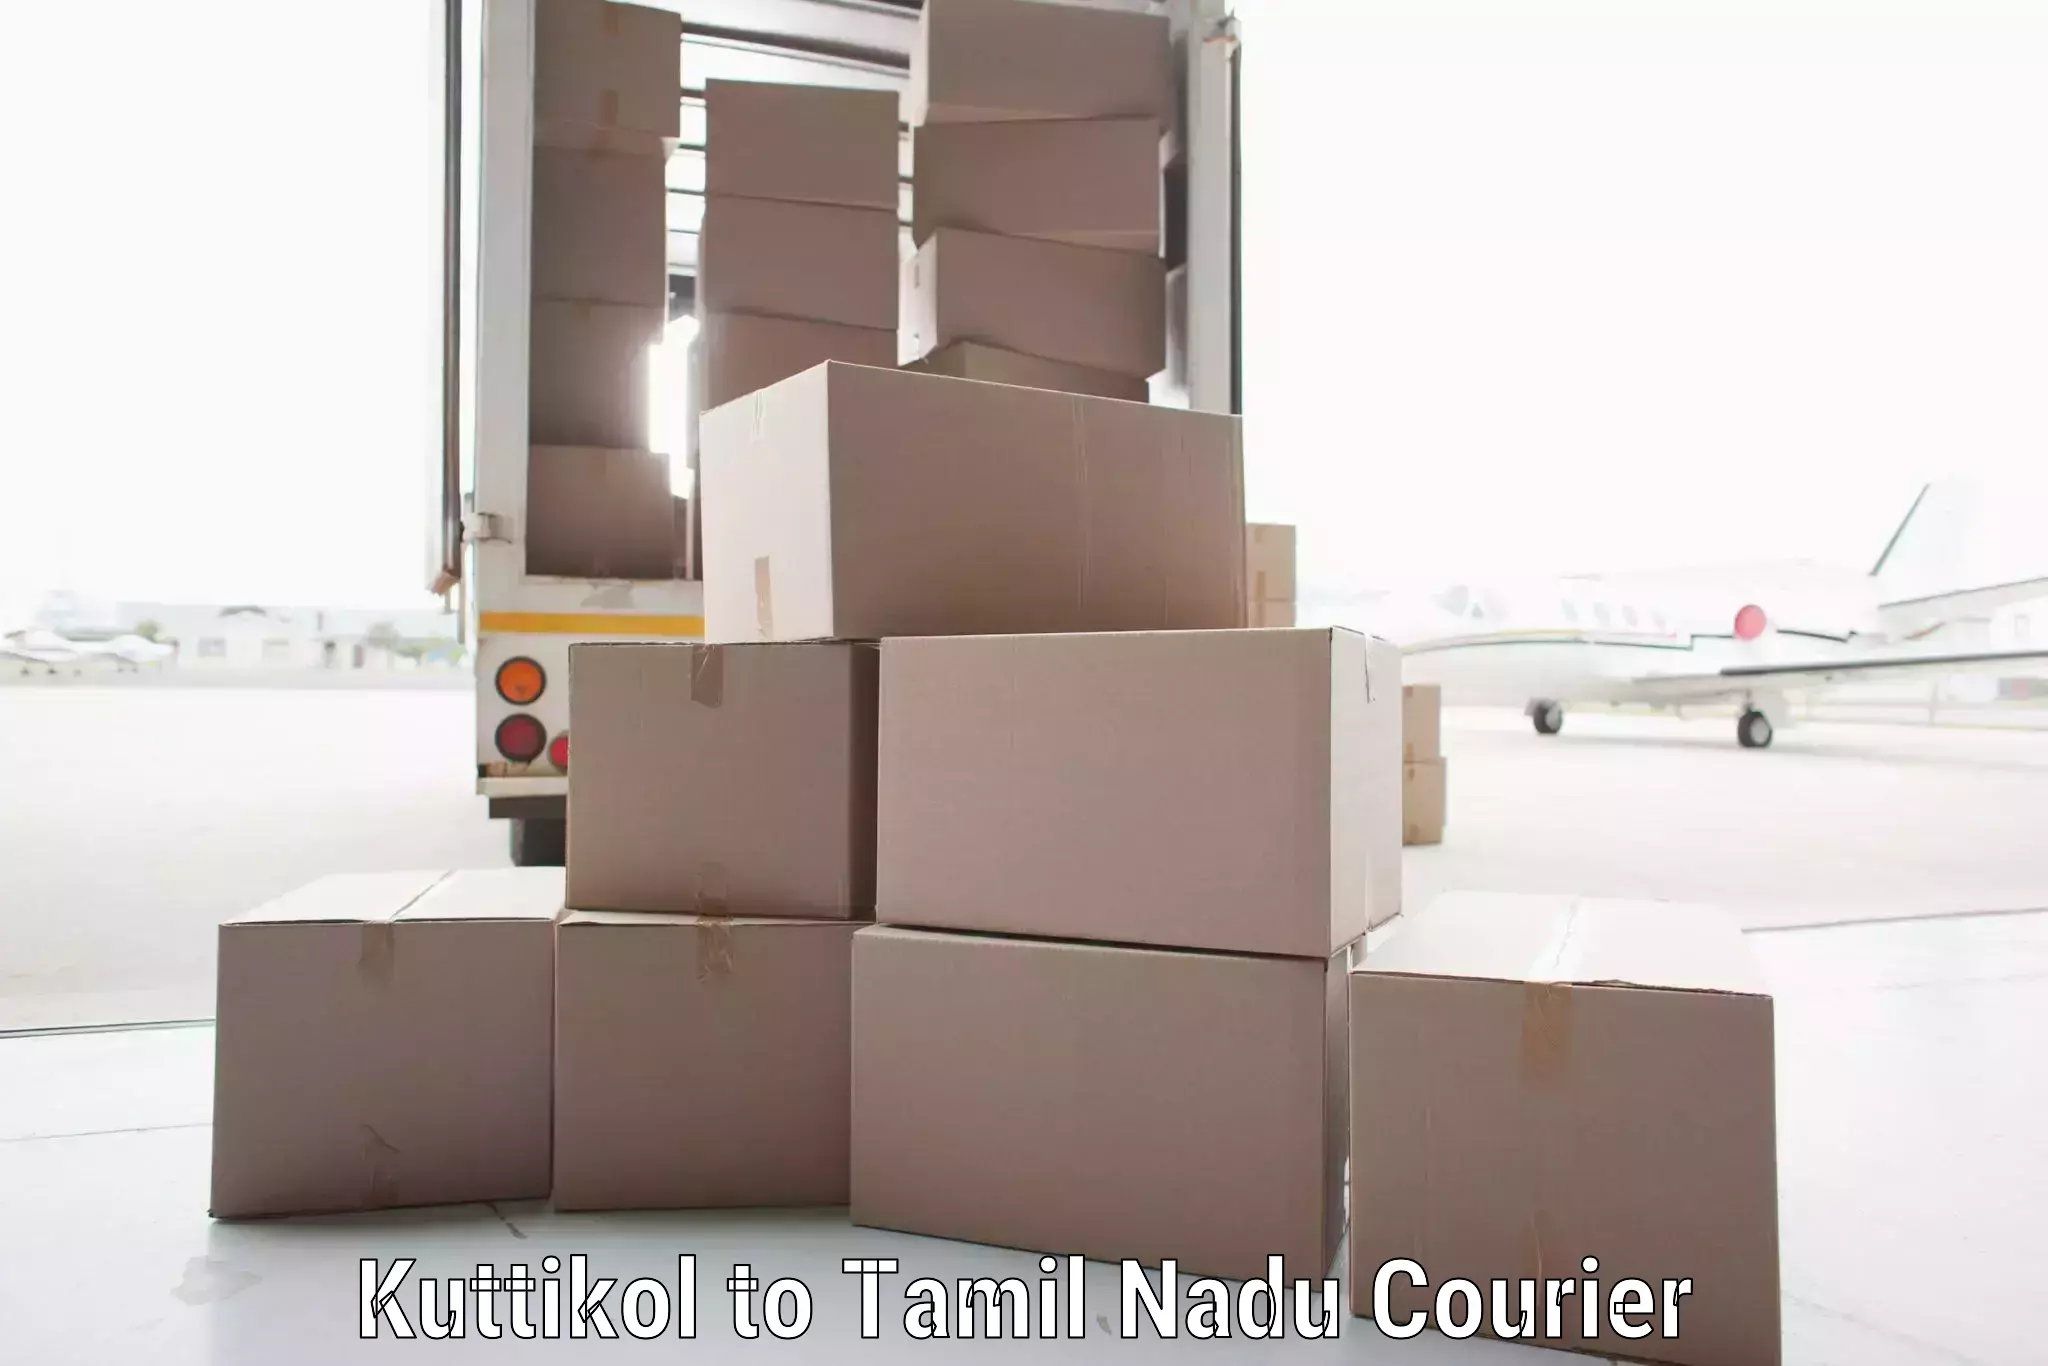 Modern courier technology in Kuttikol to Marakkanam